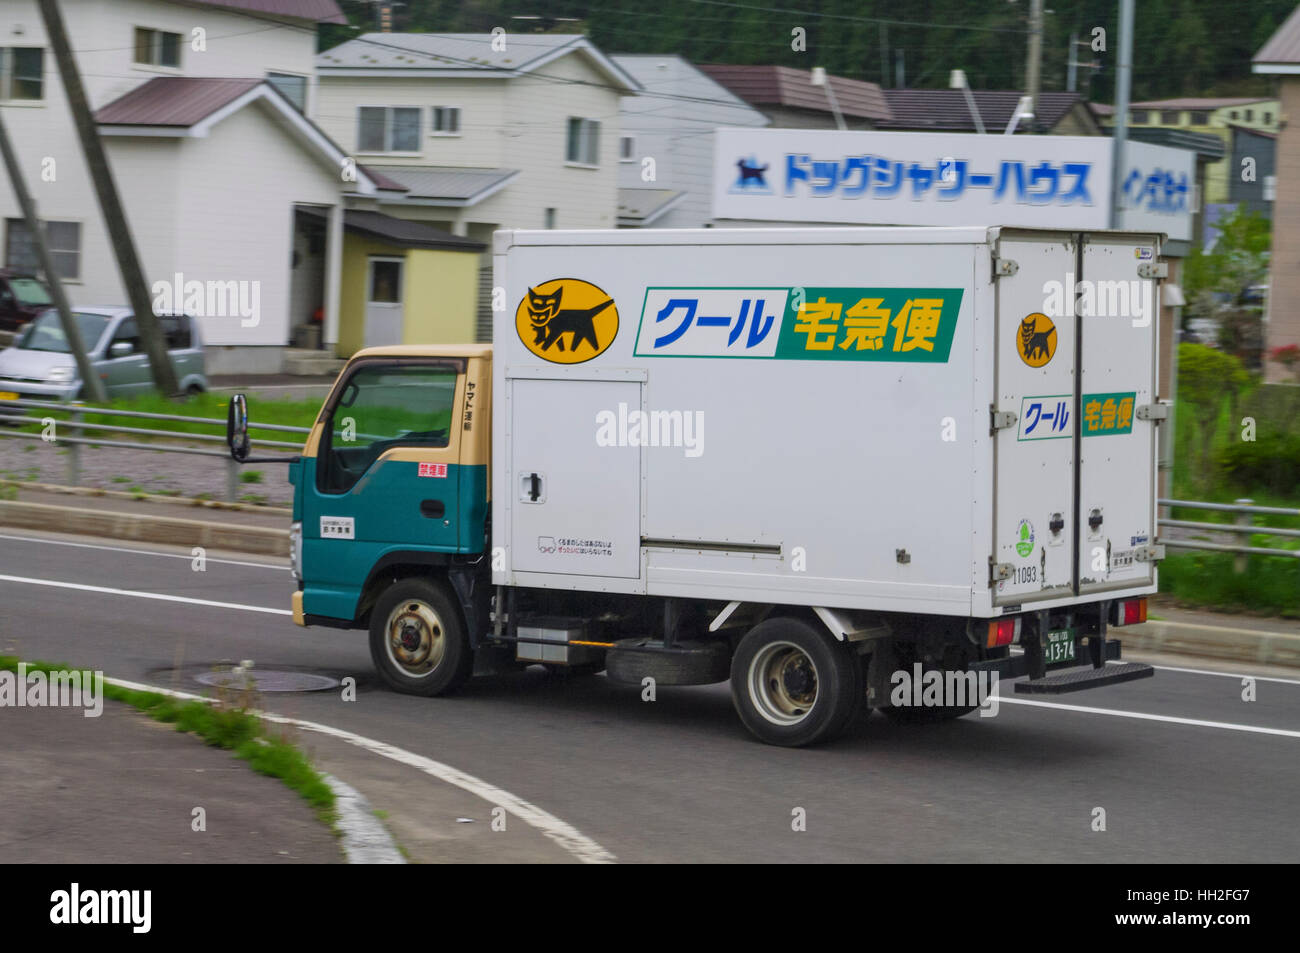 Yamato petit camion de transport avec l'entreprise 'kuro neko' (black cat) logo. Hokkaido, Japon. Banque D'Images